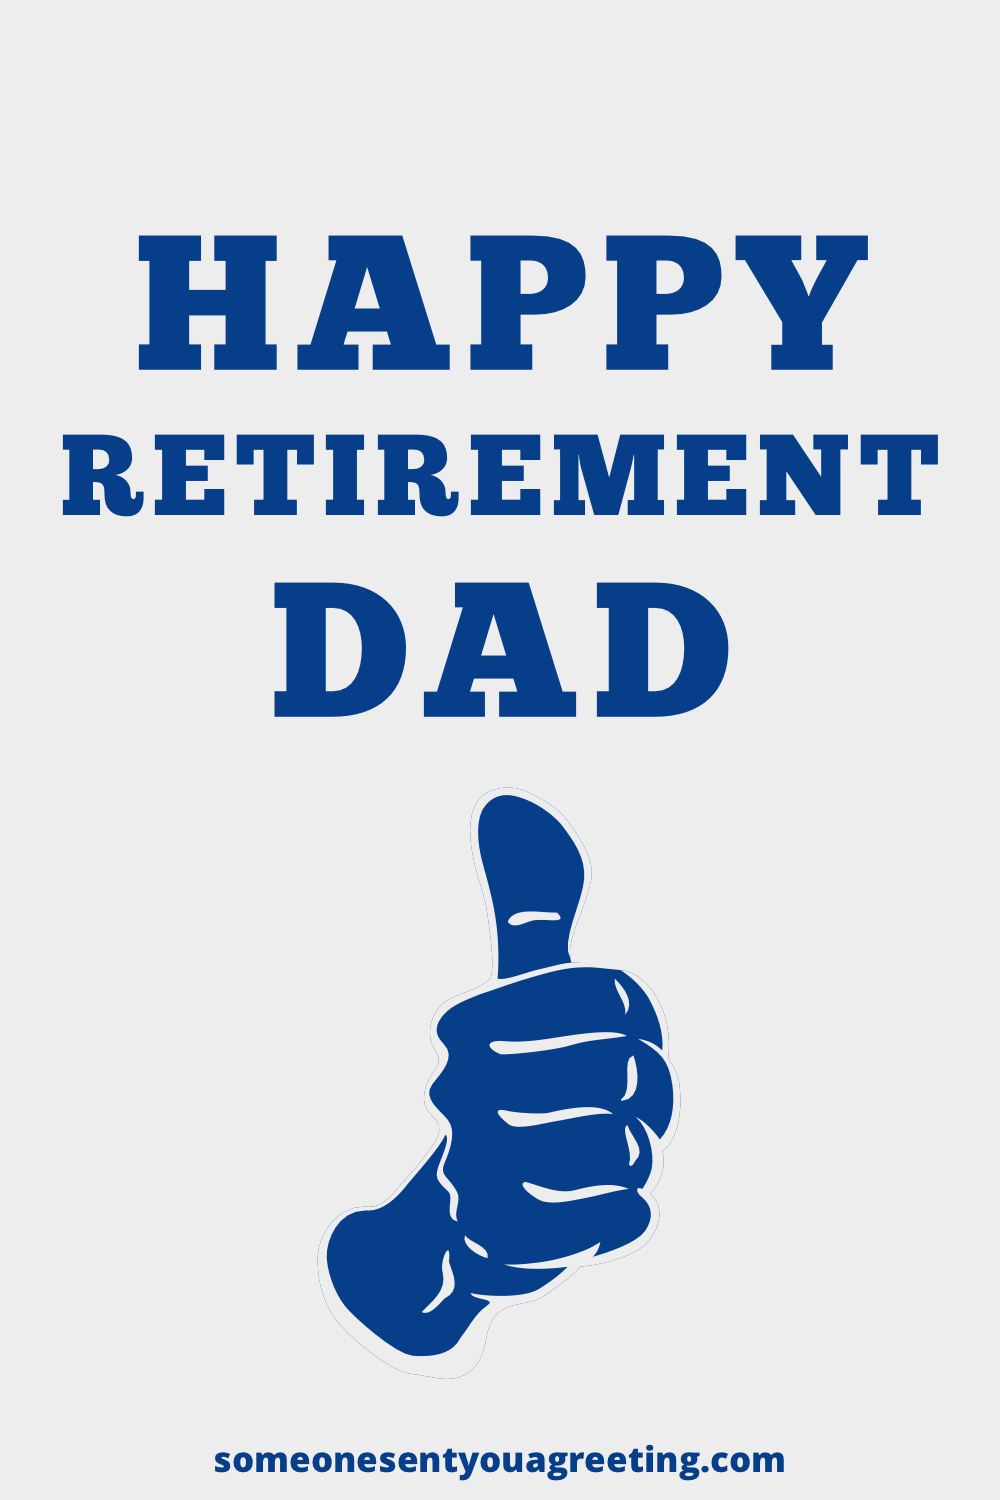 Happy retirement dad